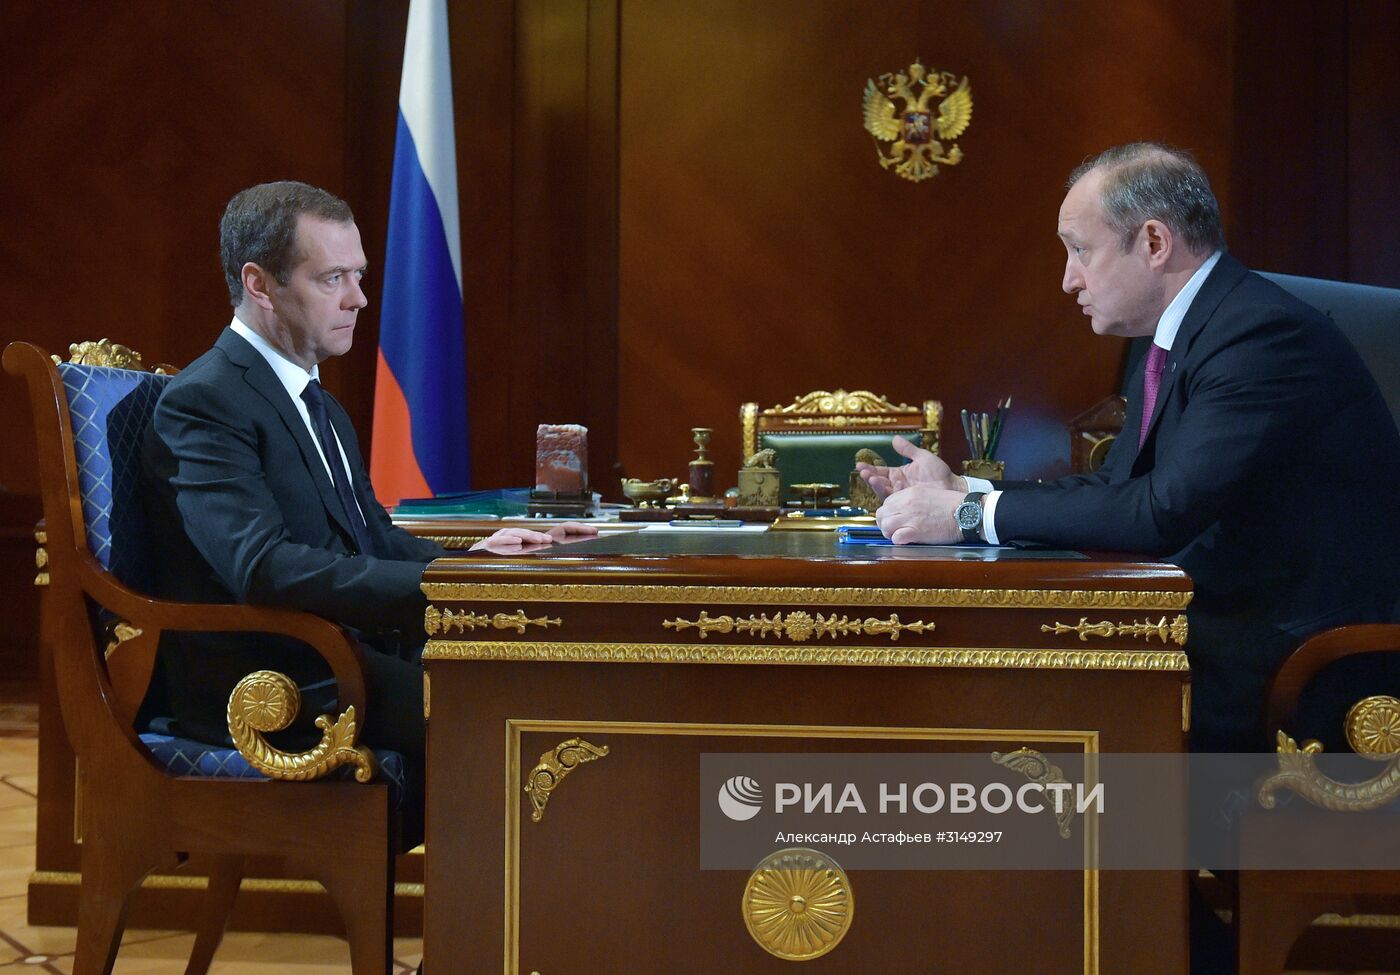 Премьер-министр РФ Д. Медведев встретился с гендиректором ПАО "Современный коммерческий флот" С. Франком